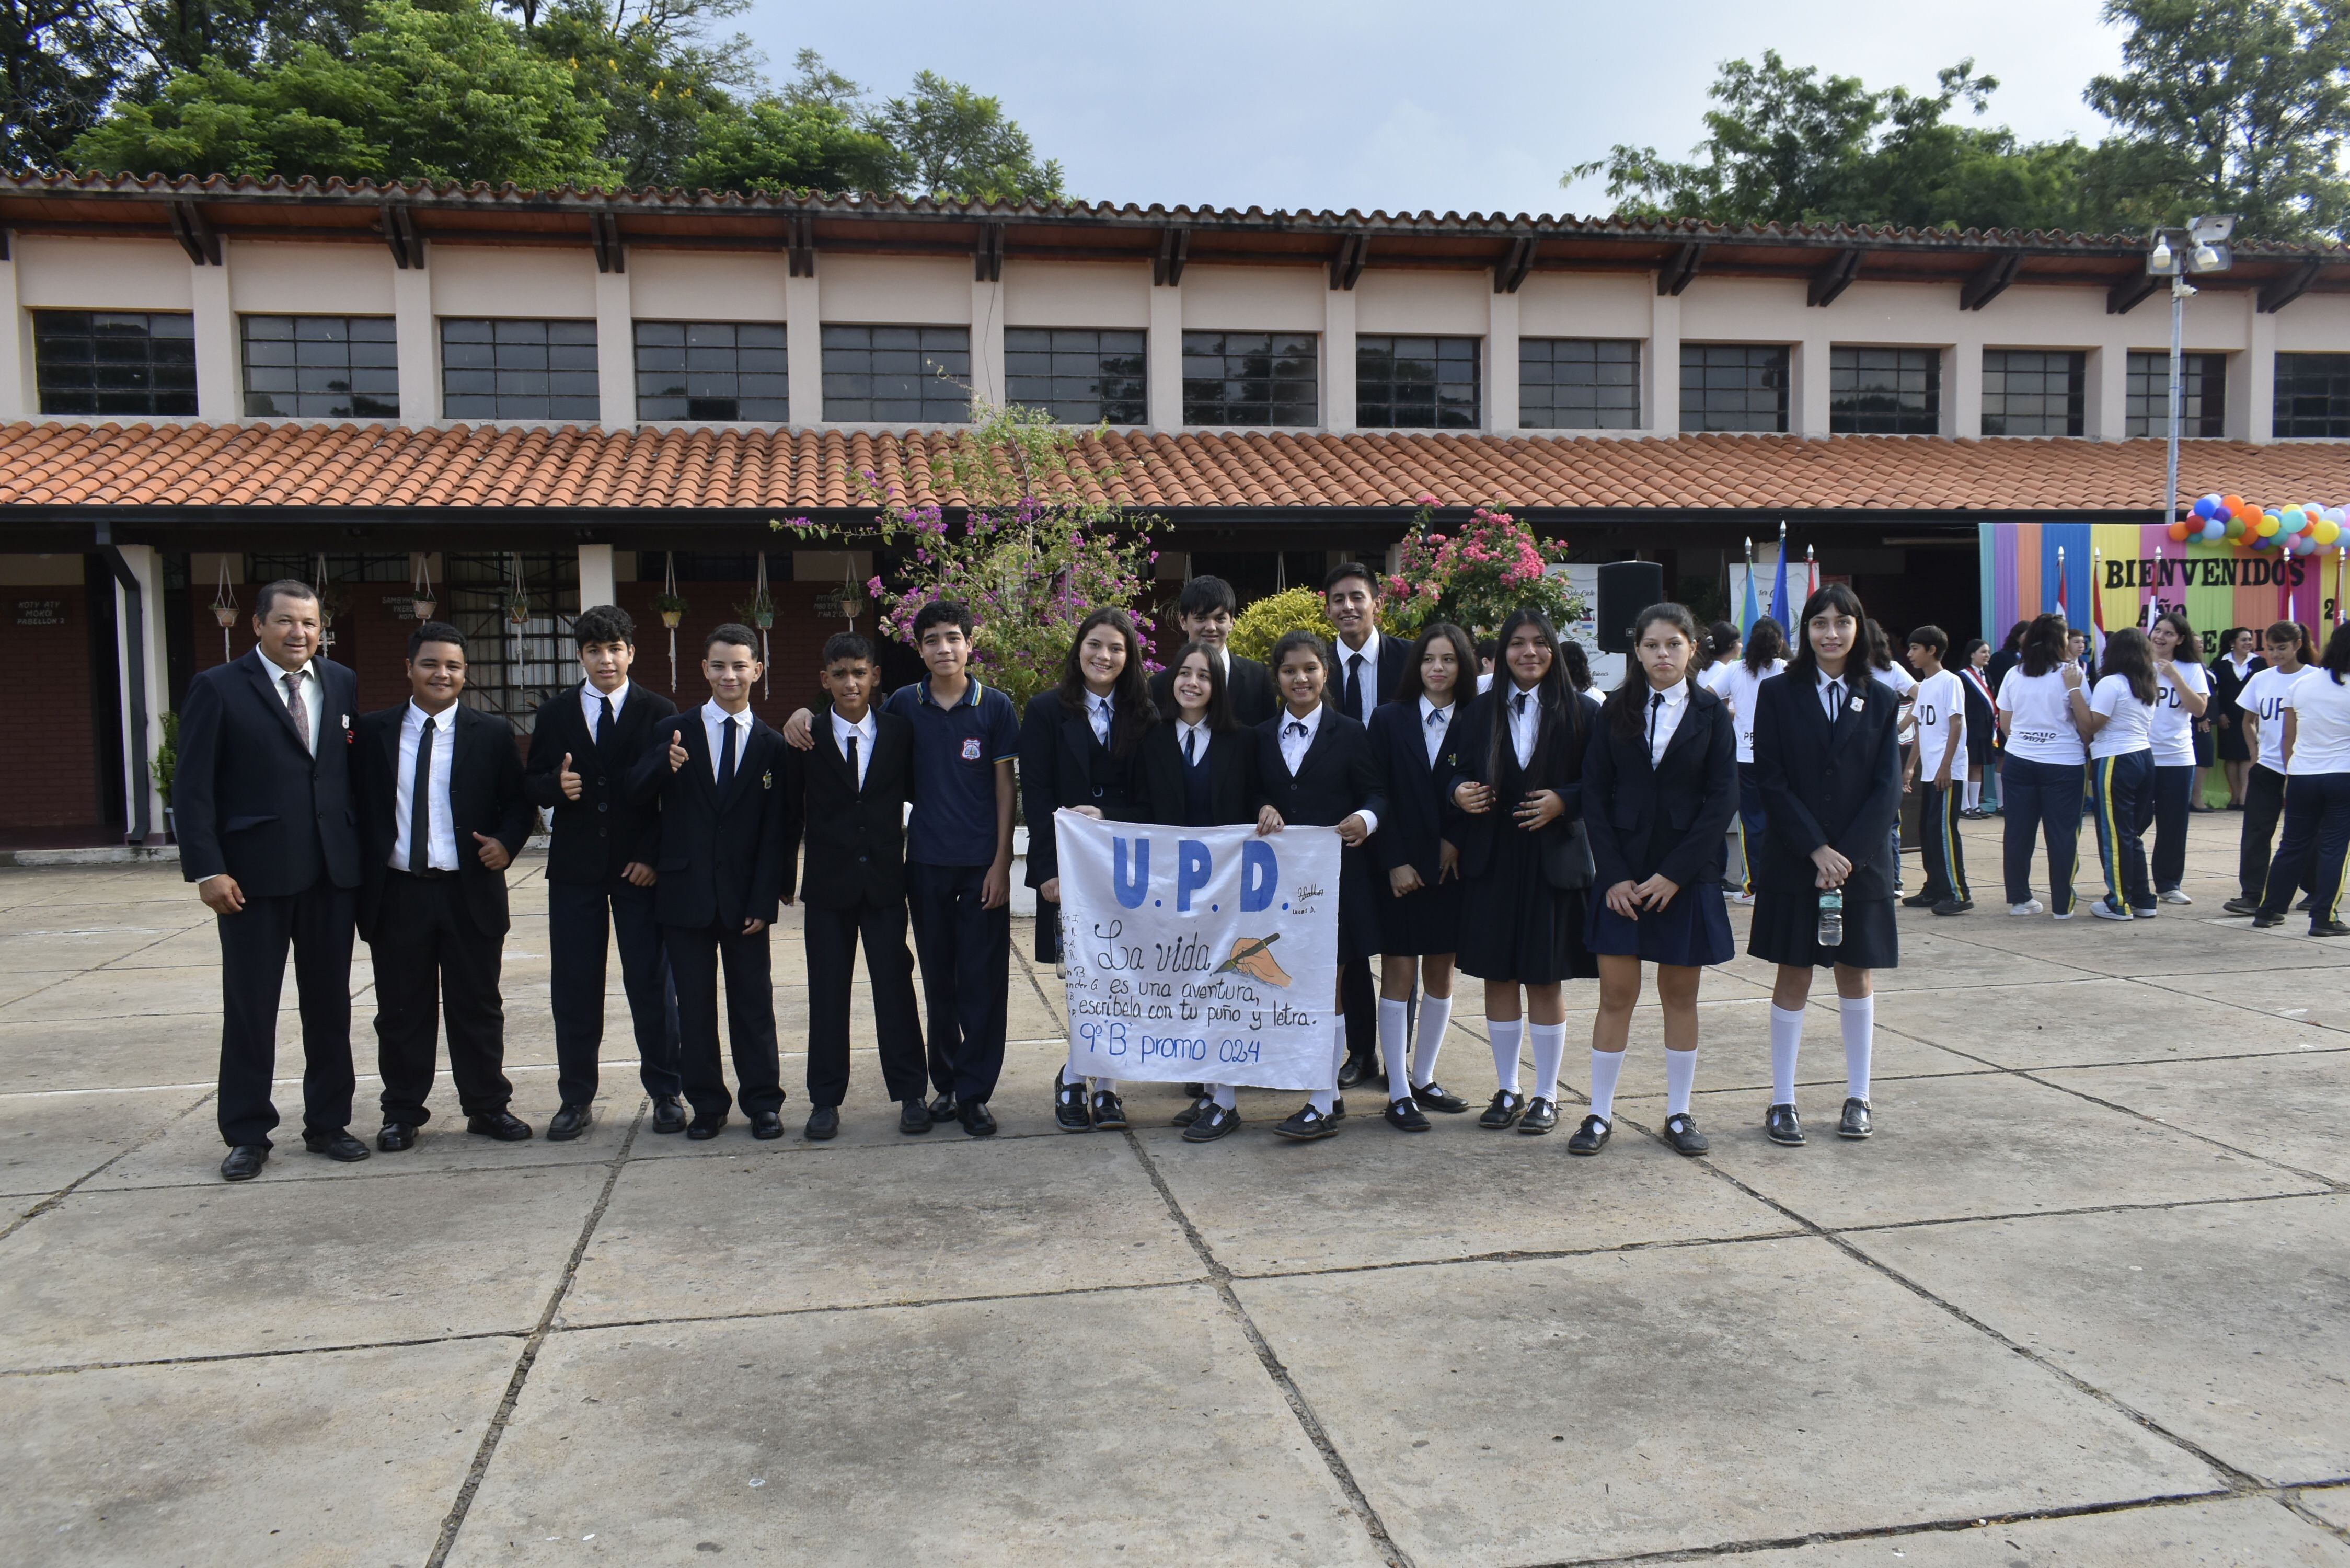 Paraguay: kits insuficientes en escuela de Ayolas